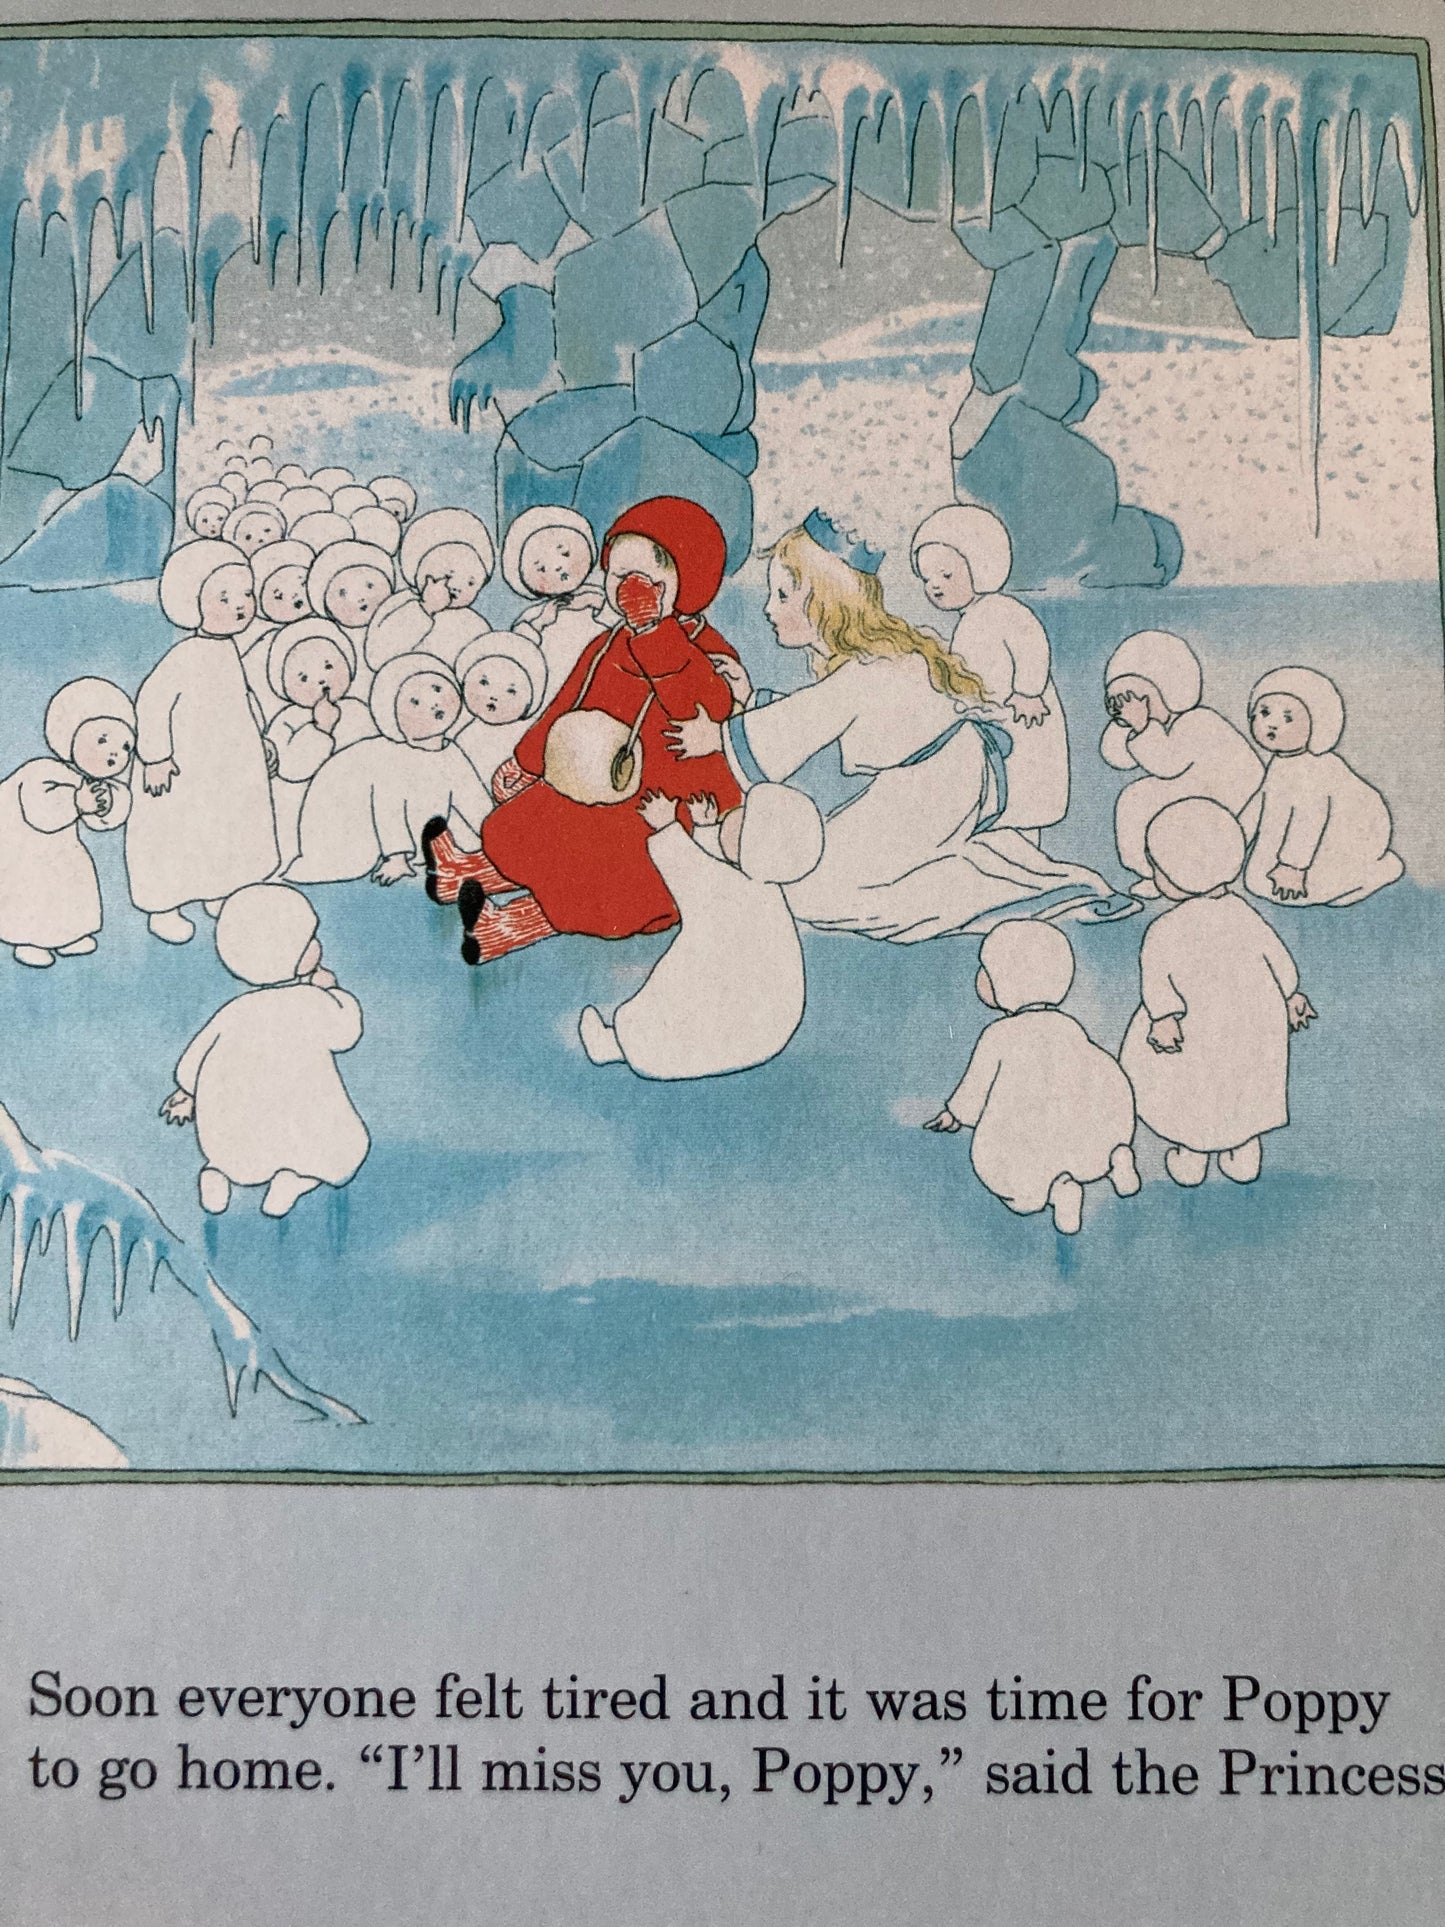 Board Book, Baby - MY FIRST SNOW CHILDREN